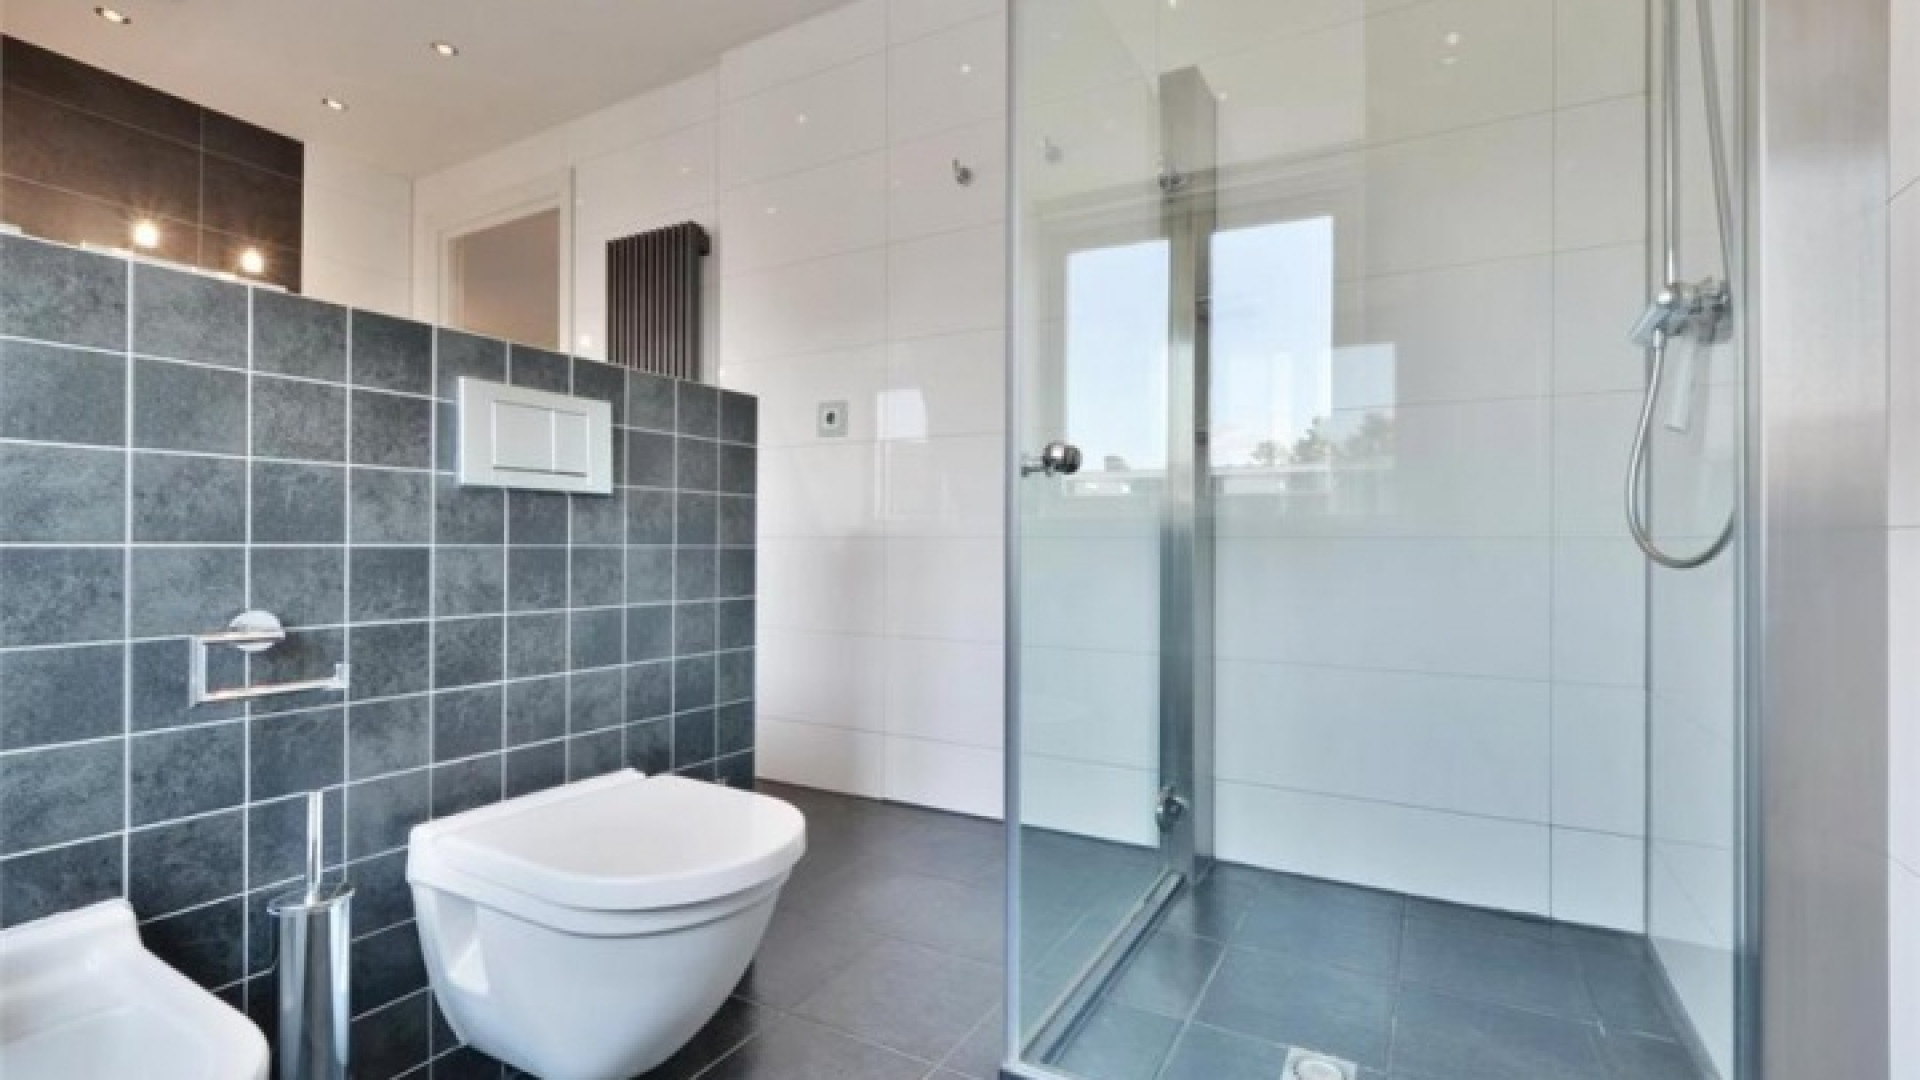 Frank Rijkaard vindt huurder voor dit zeer luxe appartement met jacuzzi op dakterras. Zie foto's